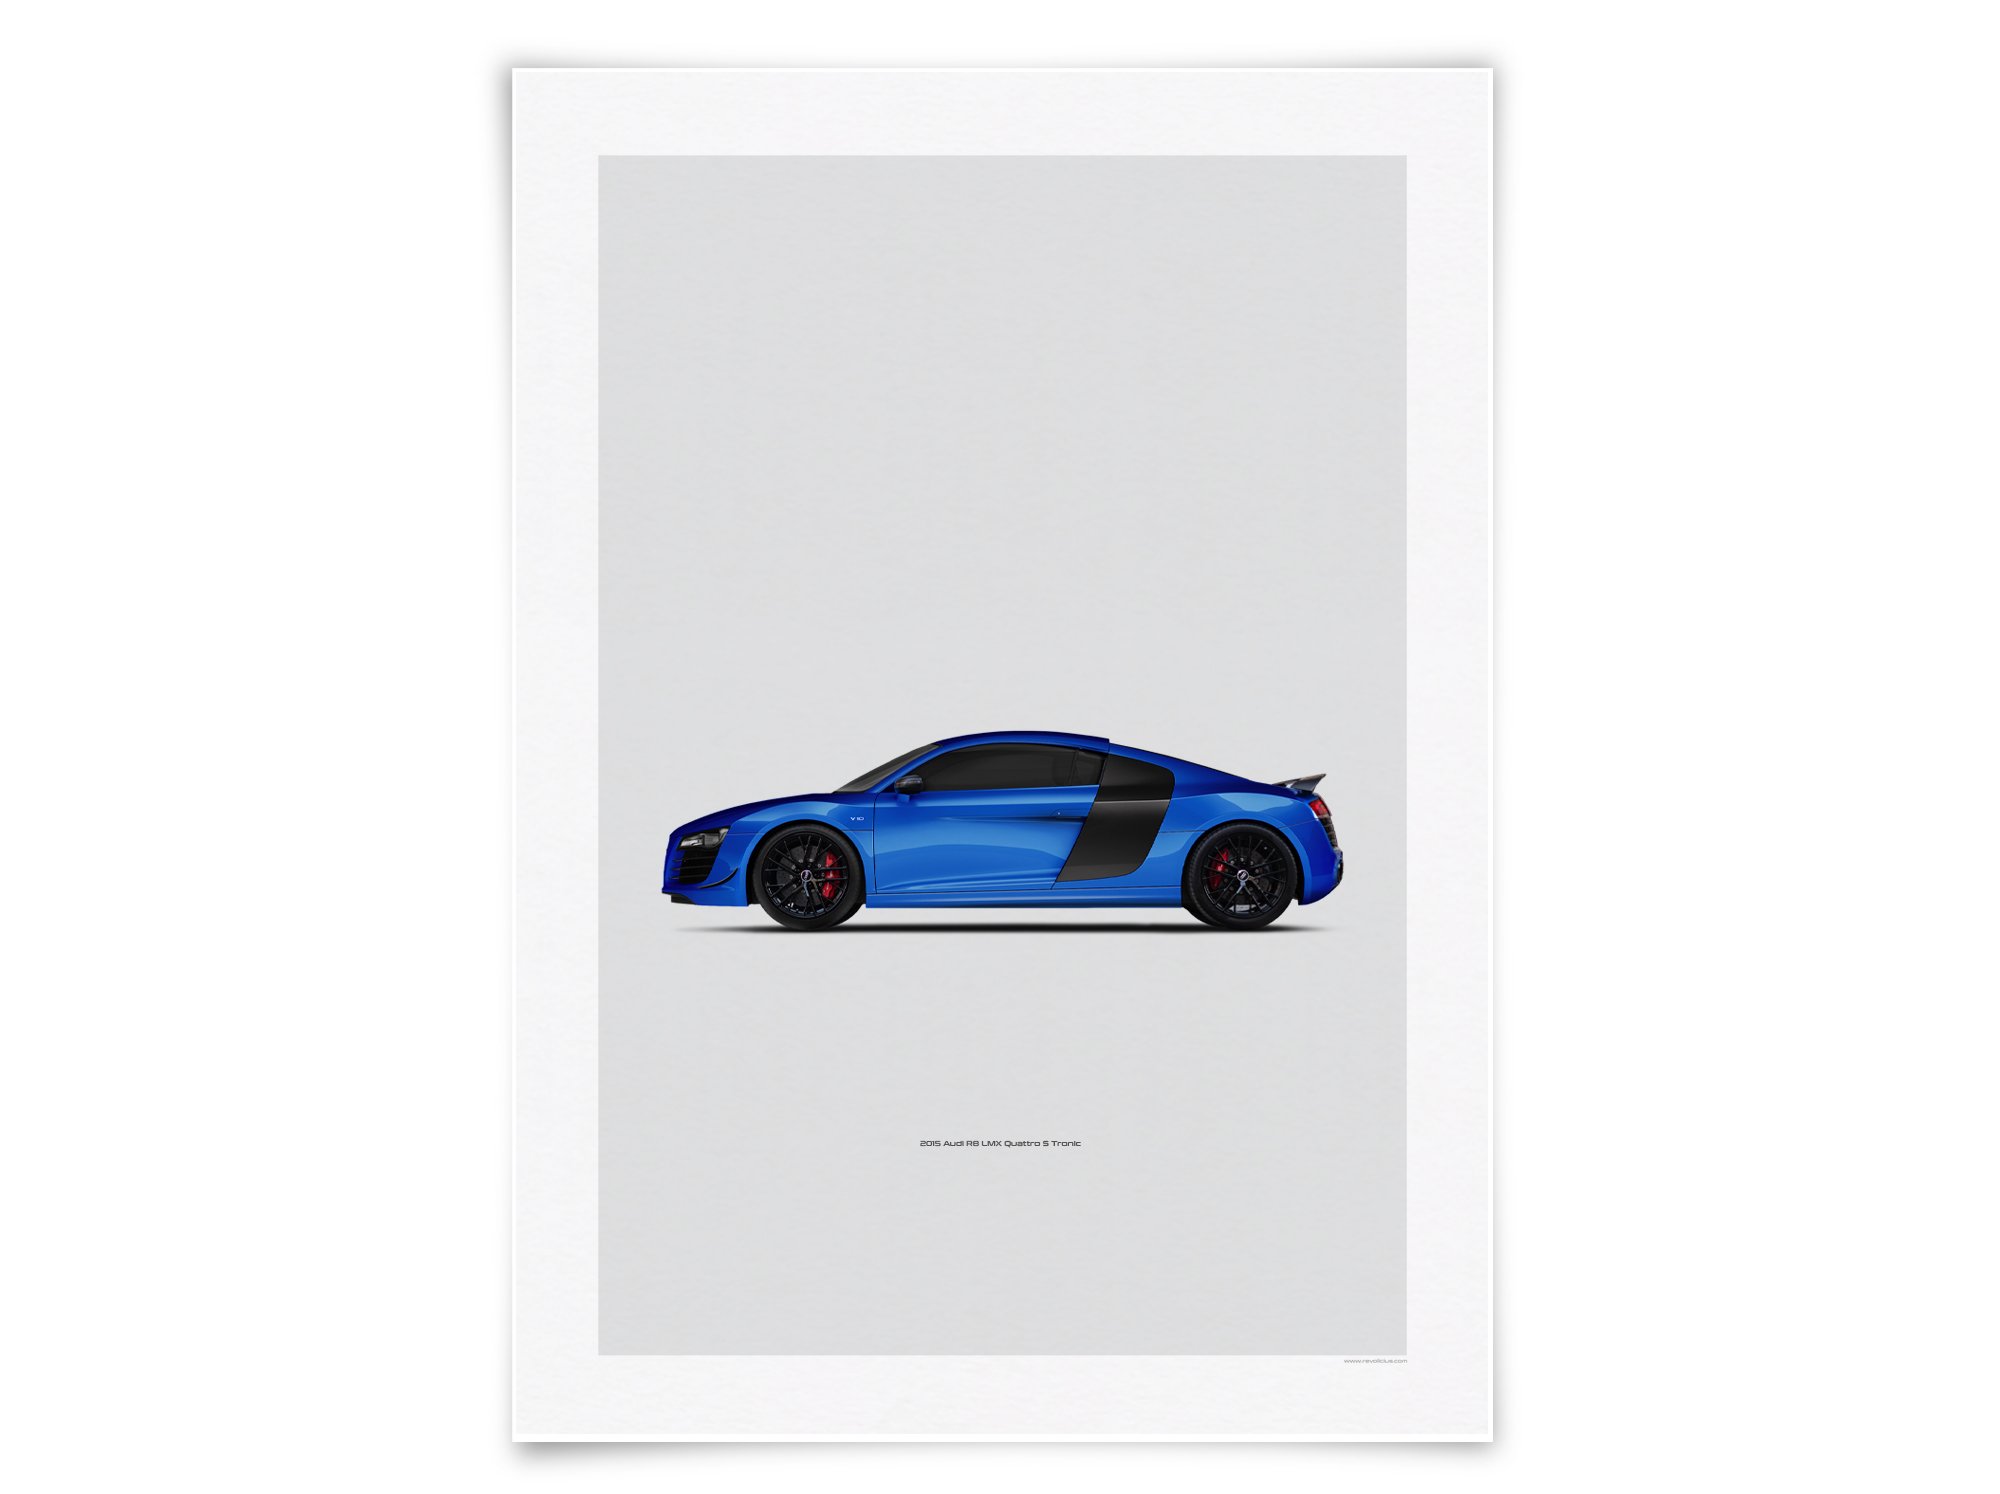 2015 Audi R8 Quattro - Car poster, car illustration, car print Revolicius